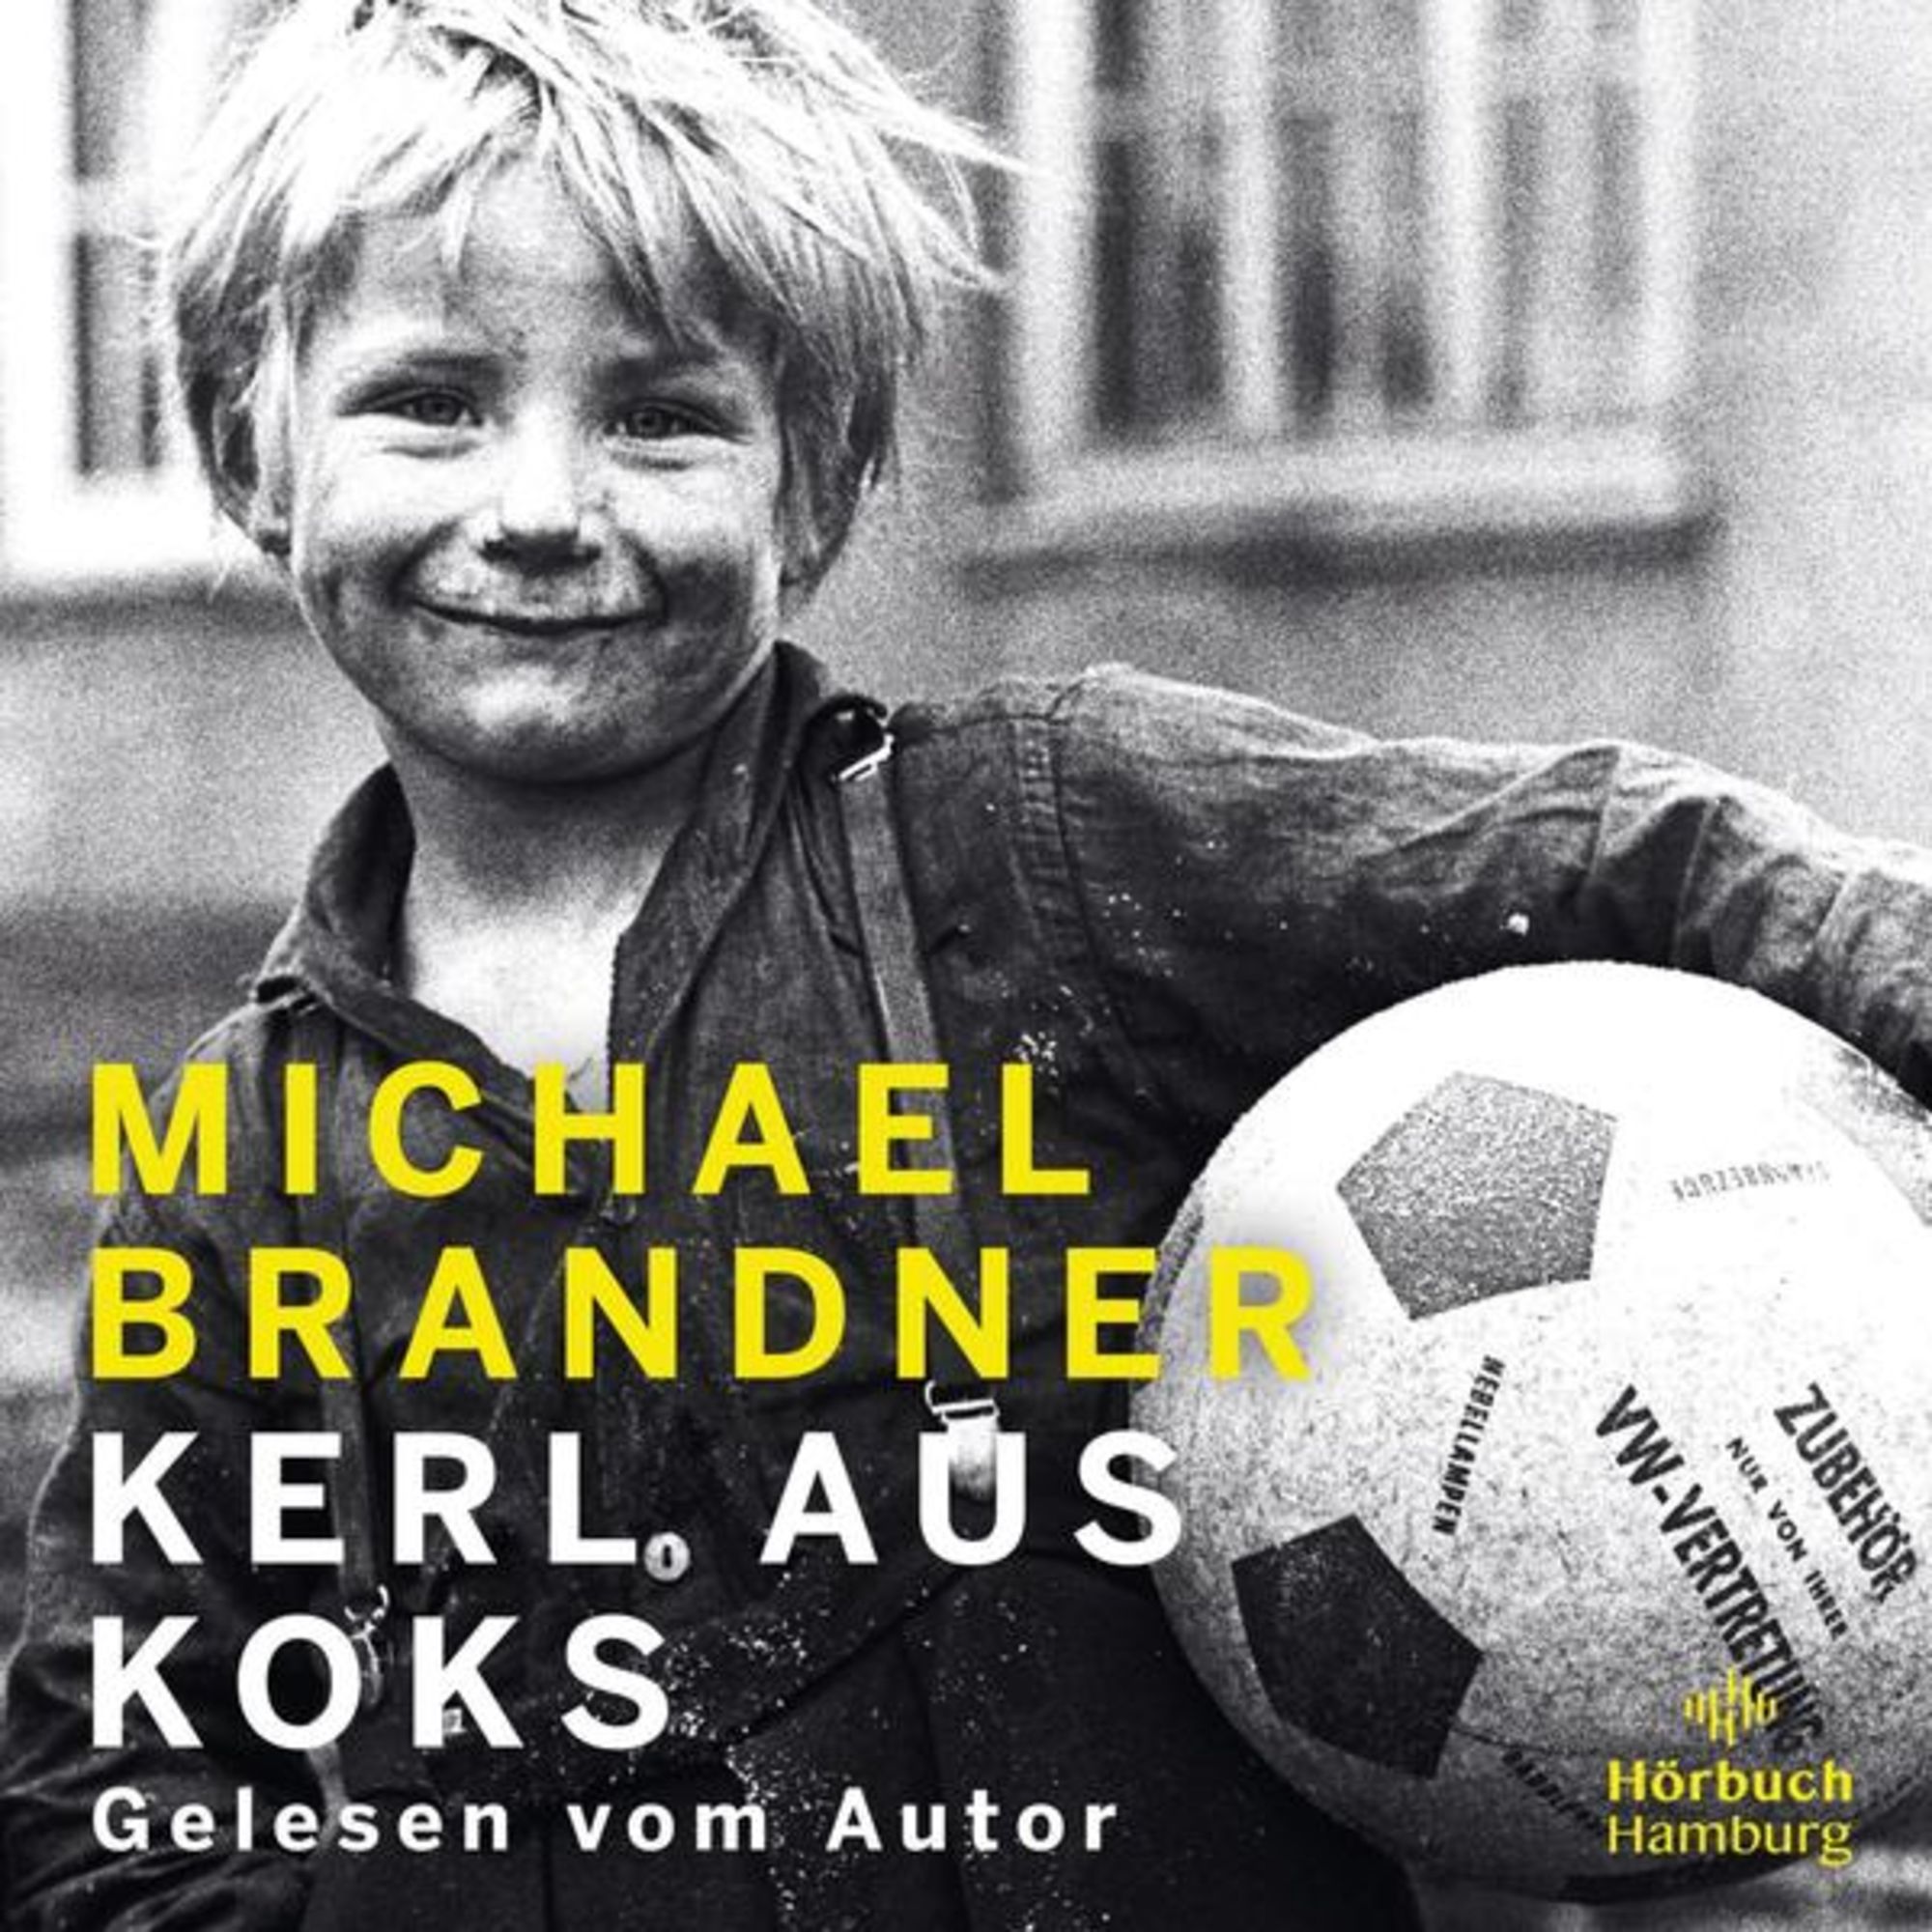 Kerl aus Koks' von 'Michael Brandner' - Hörbuch